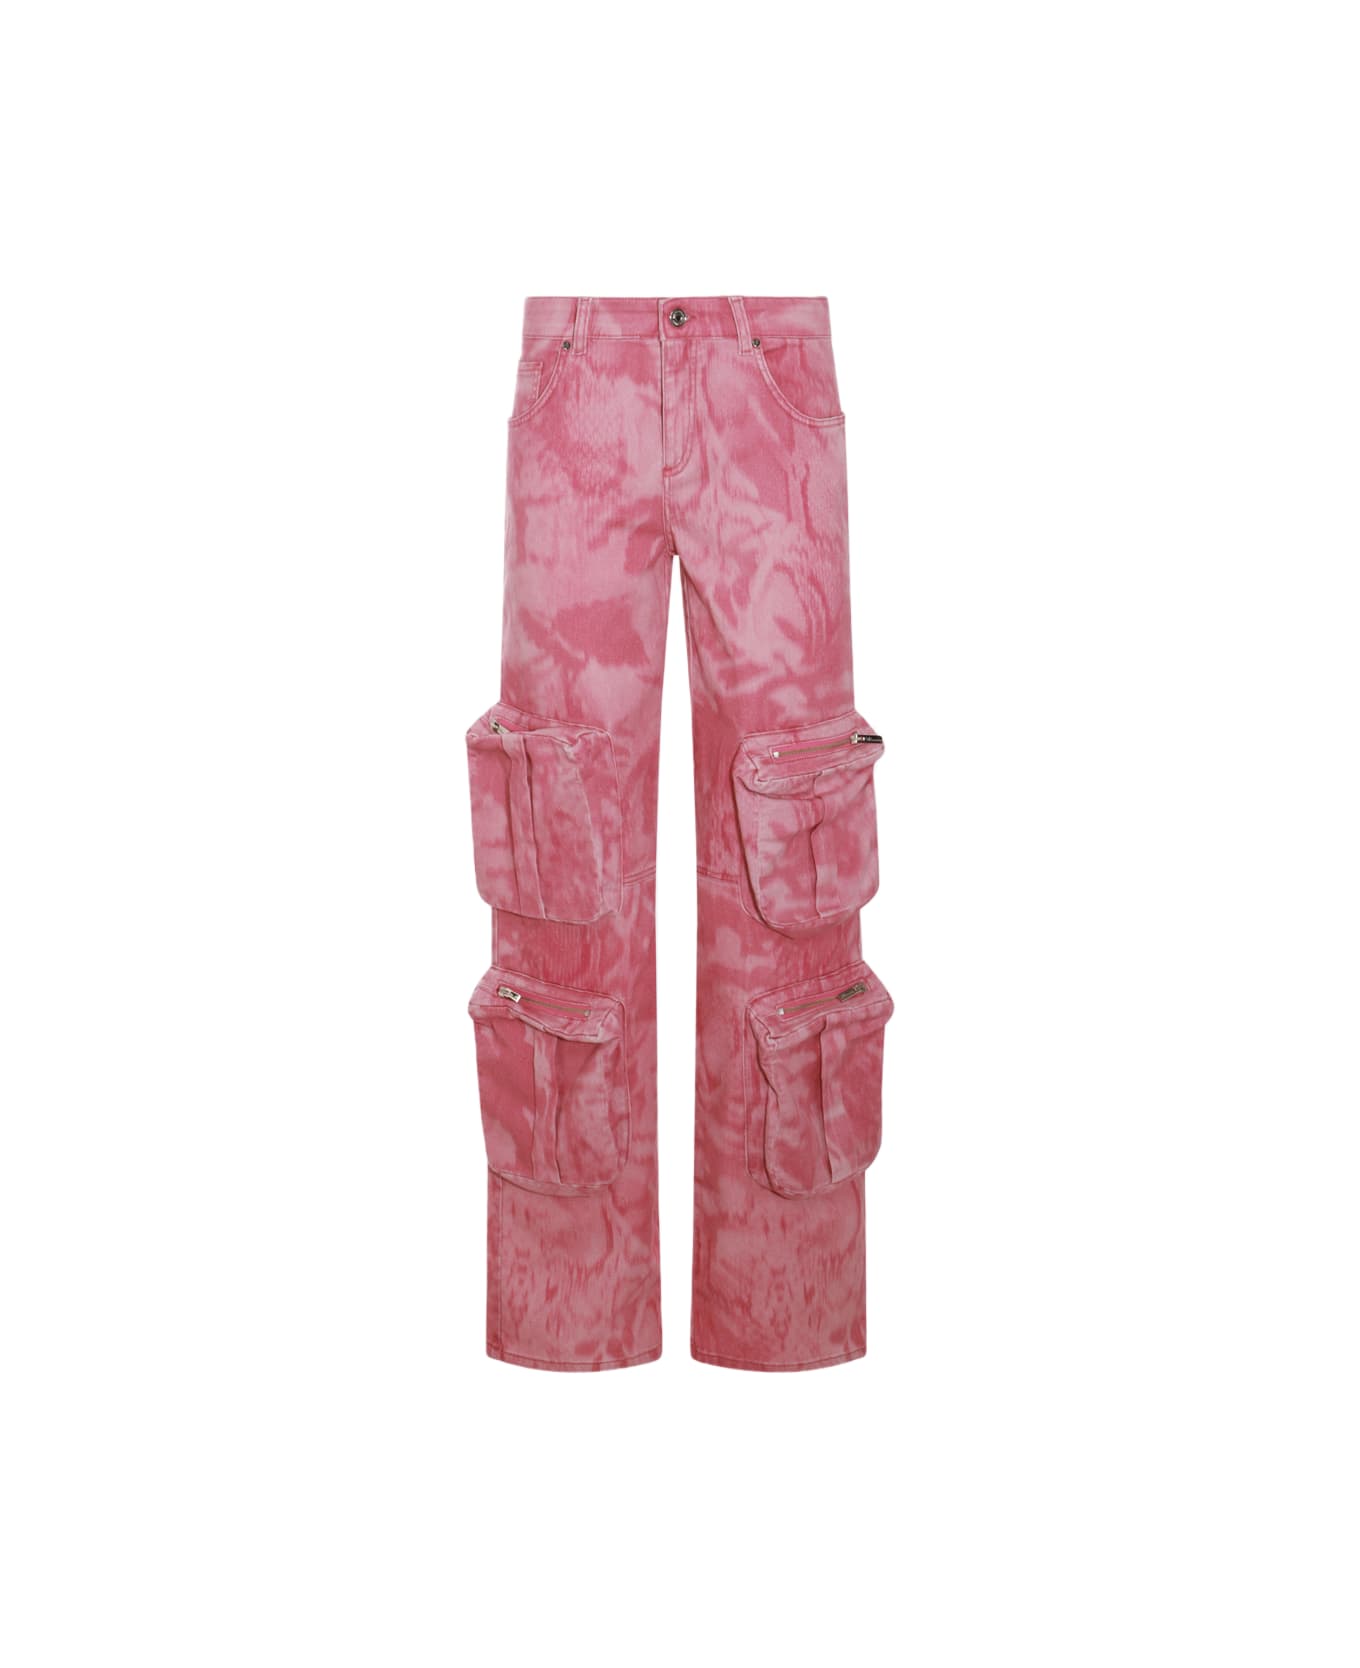 Blumarine Pink Cotton Blend Cargo Jeans - ROSE WINE/WILD ROSE